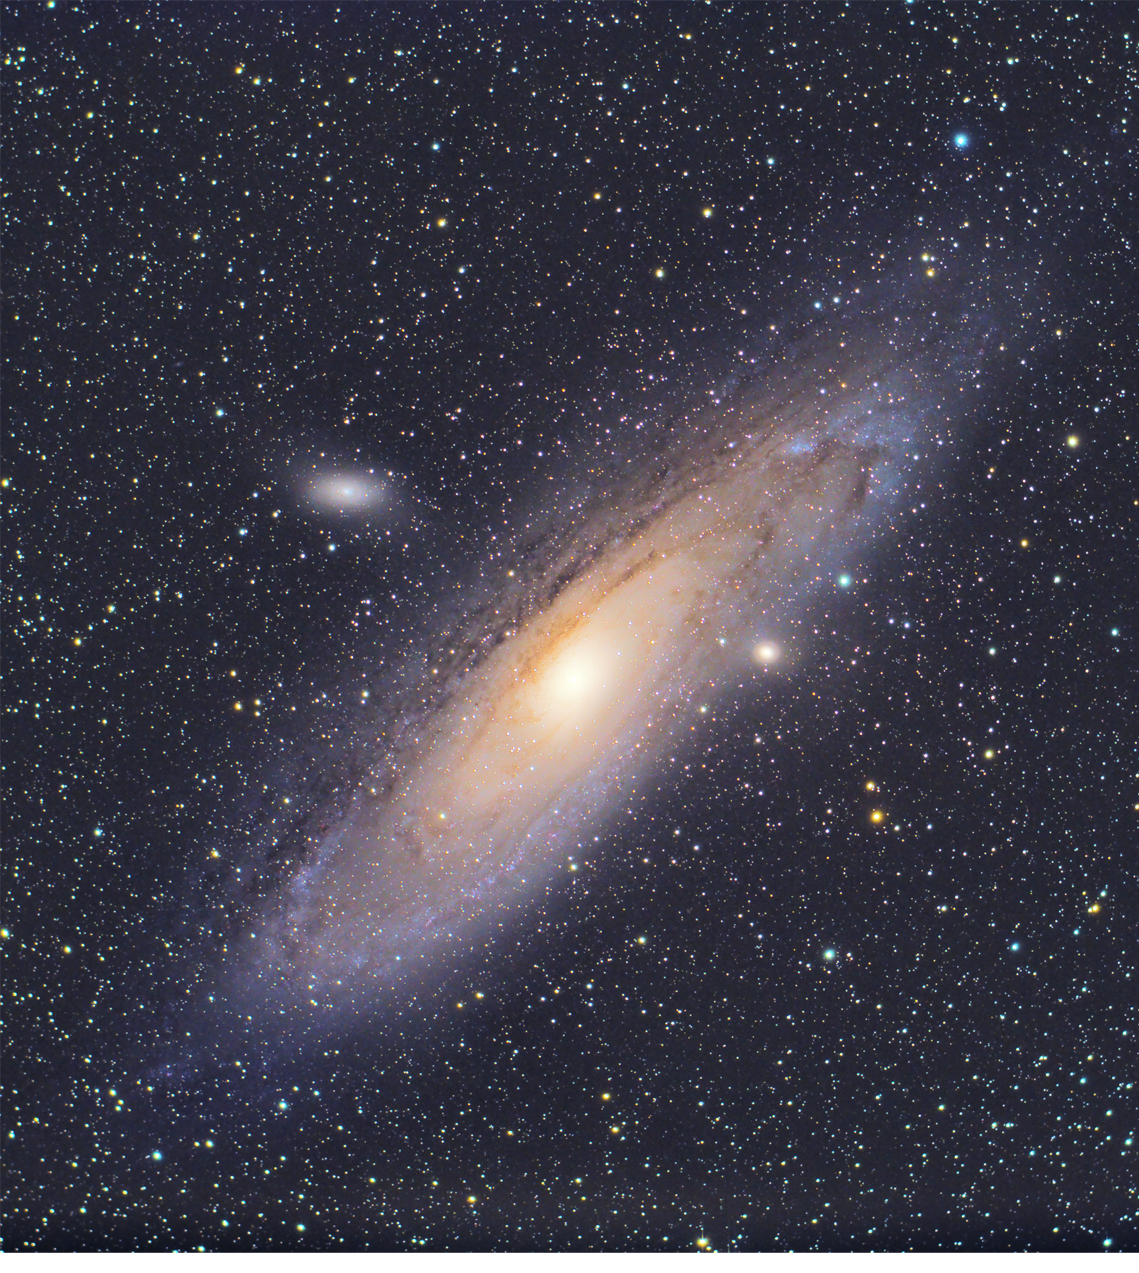 Galassia di Andromeda